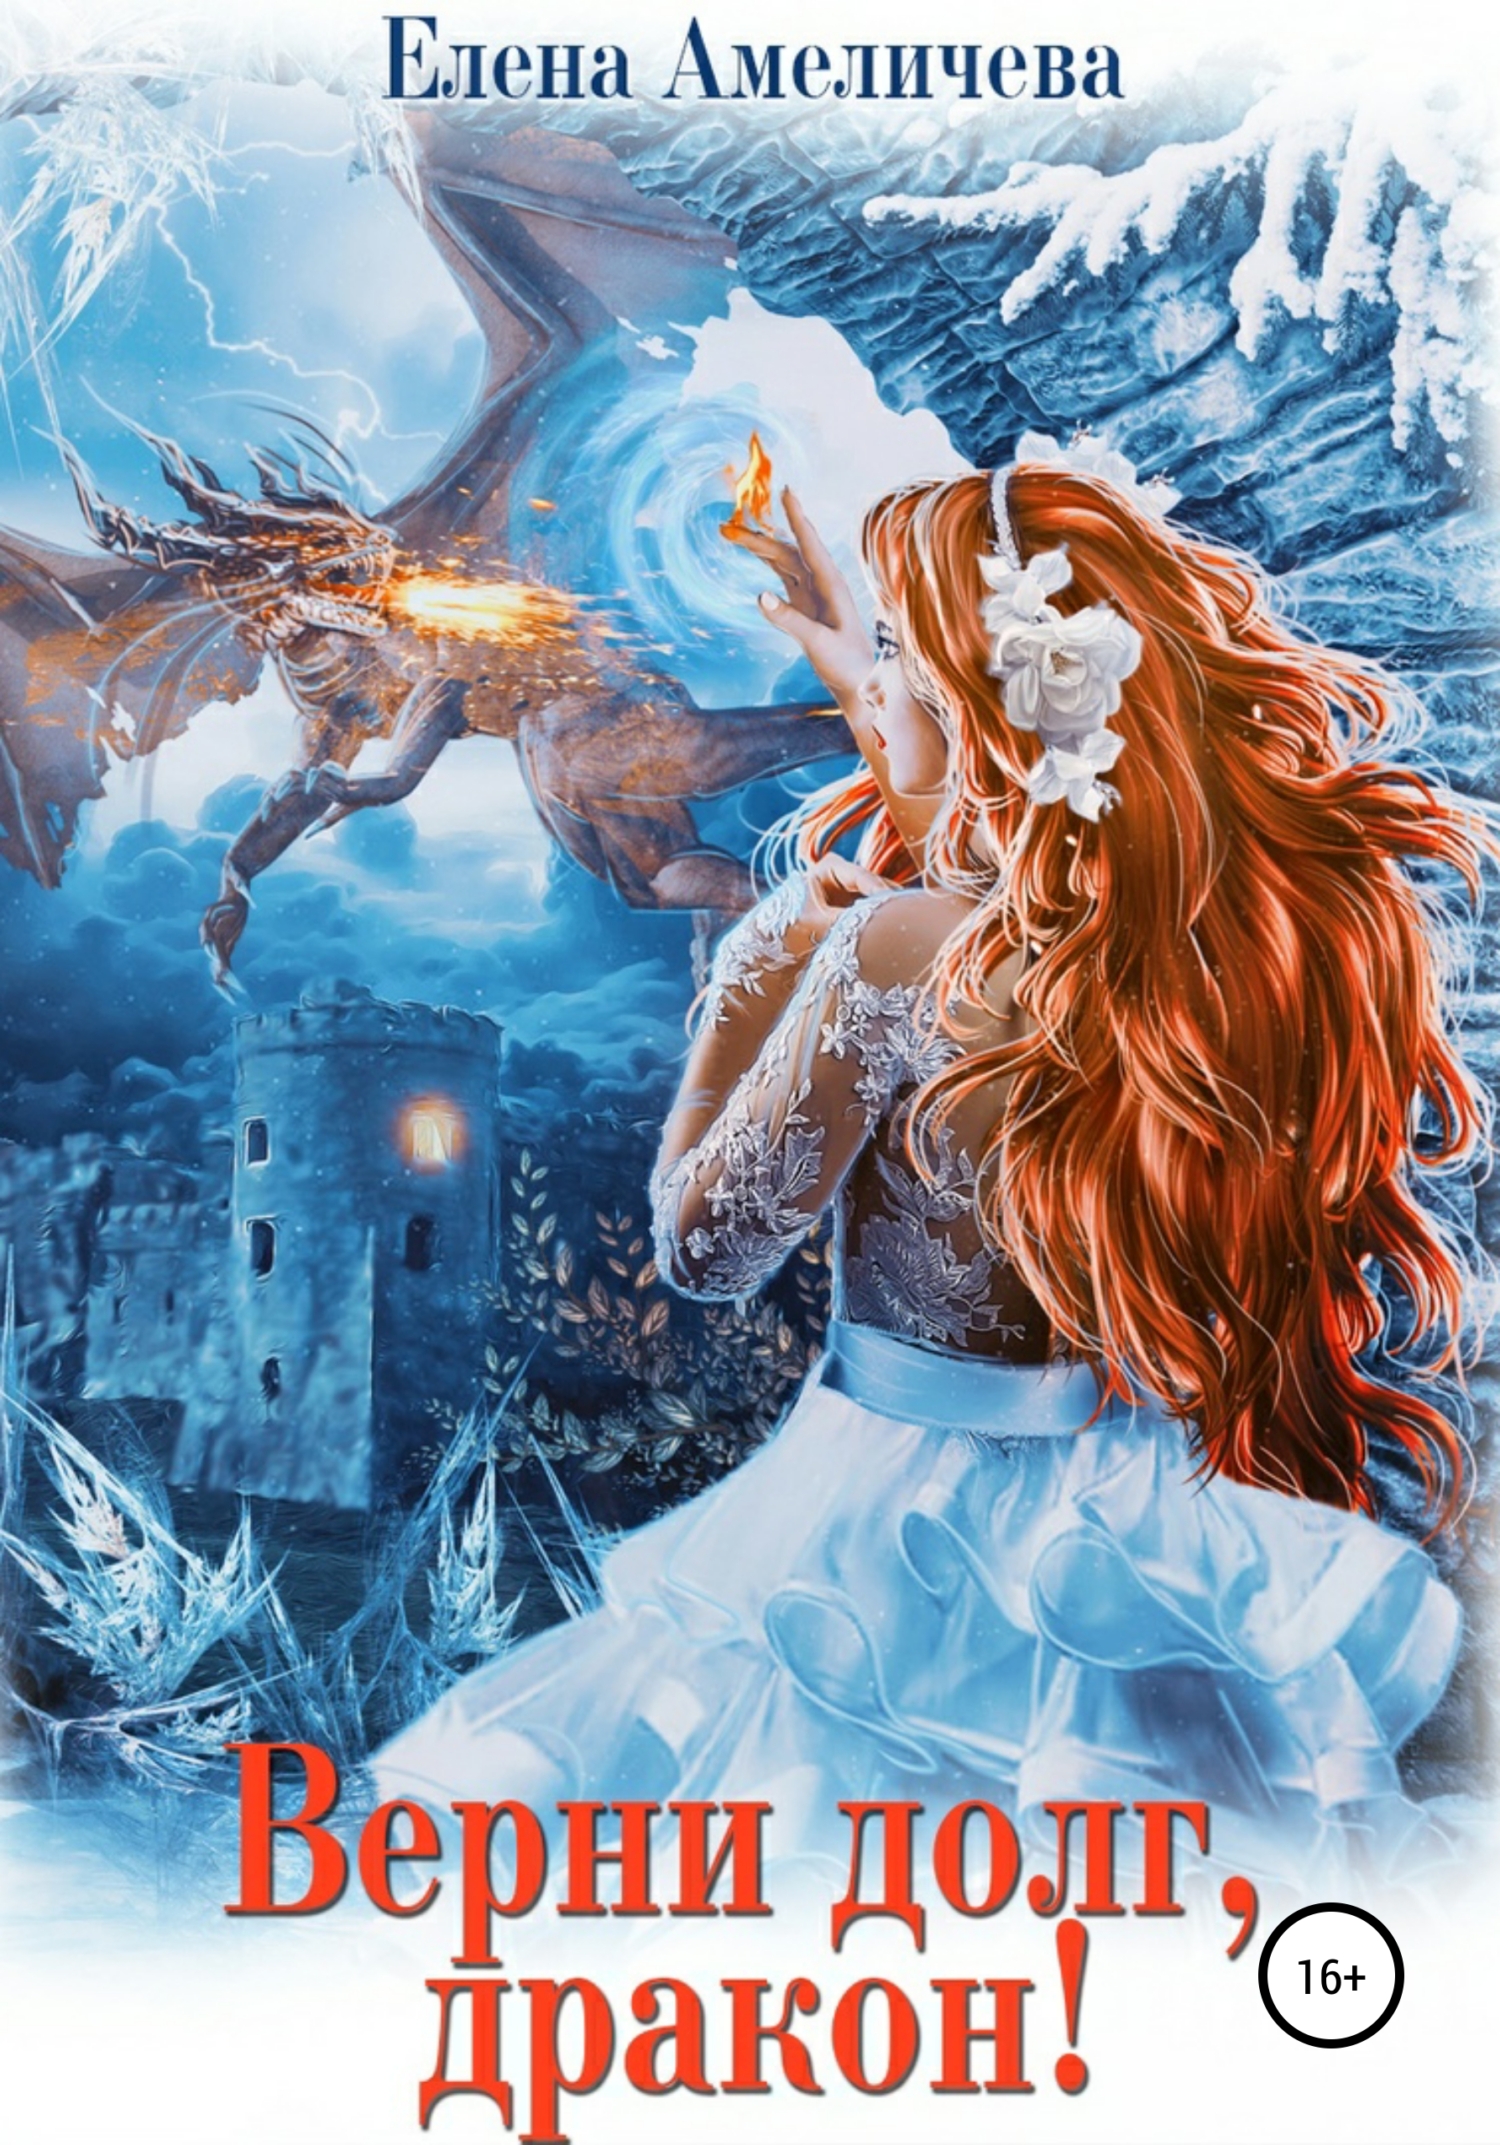 Купить мужа, или Голая правда о драконах, Елена Амеличева – скачать книгу  fb2, epub, pdf на ЛитРес